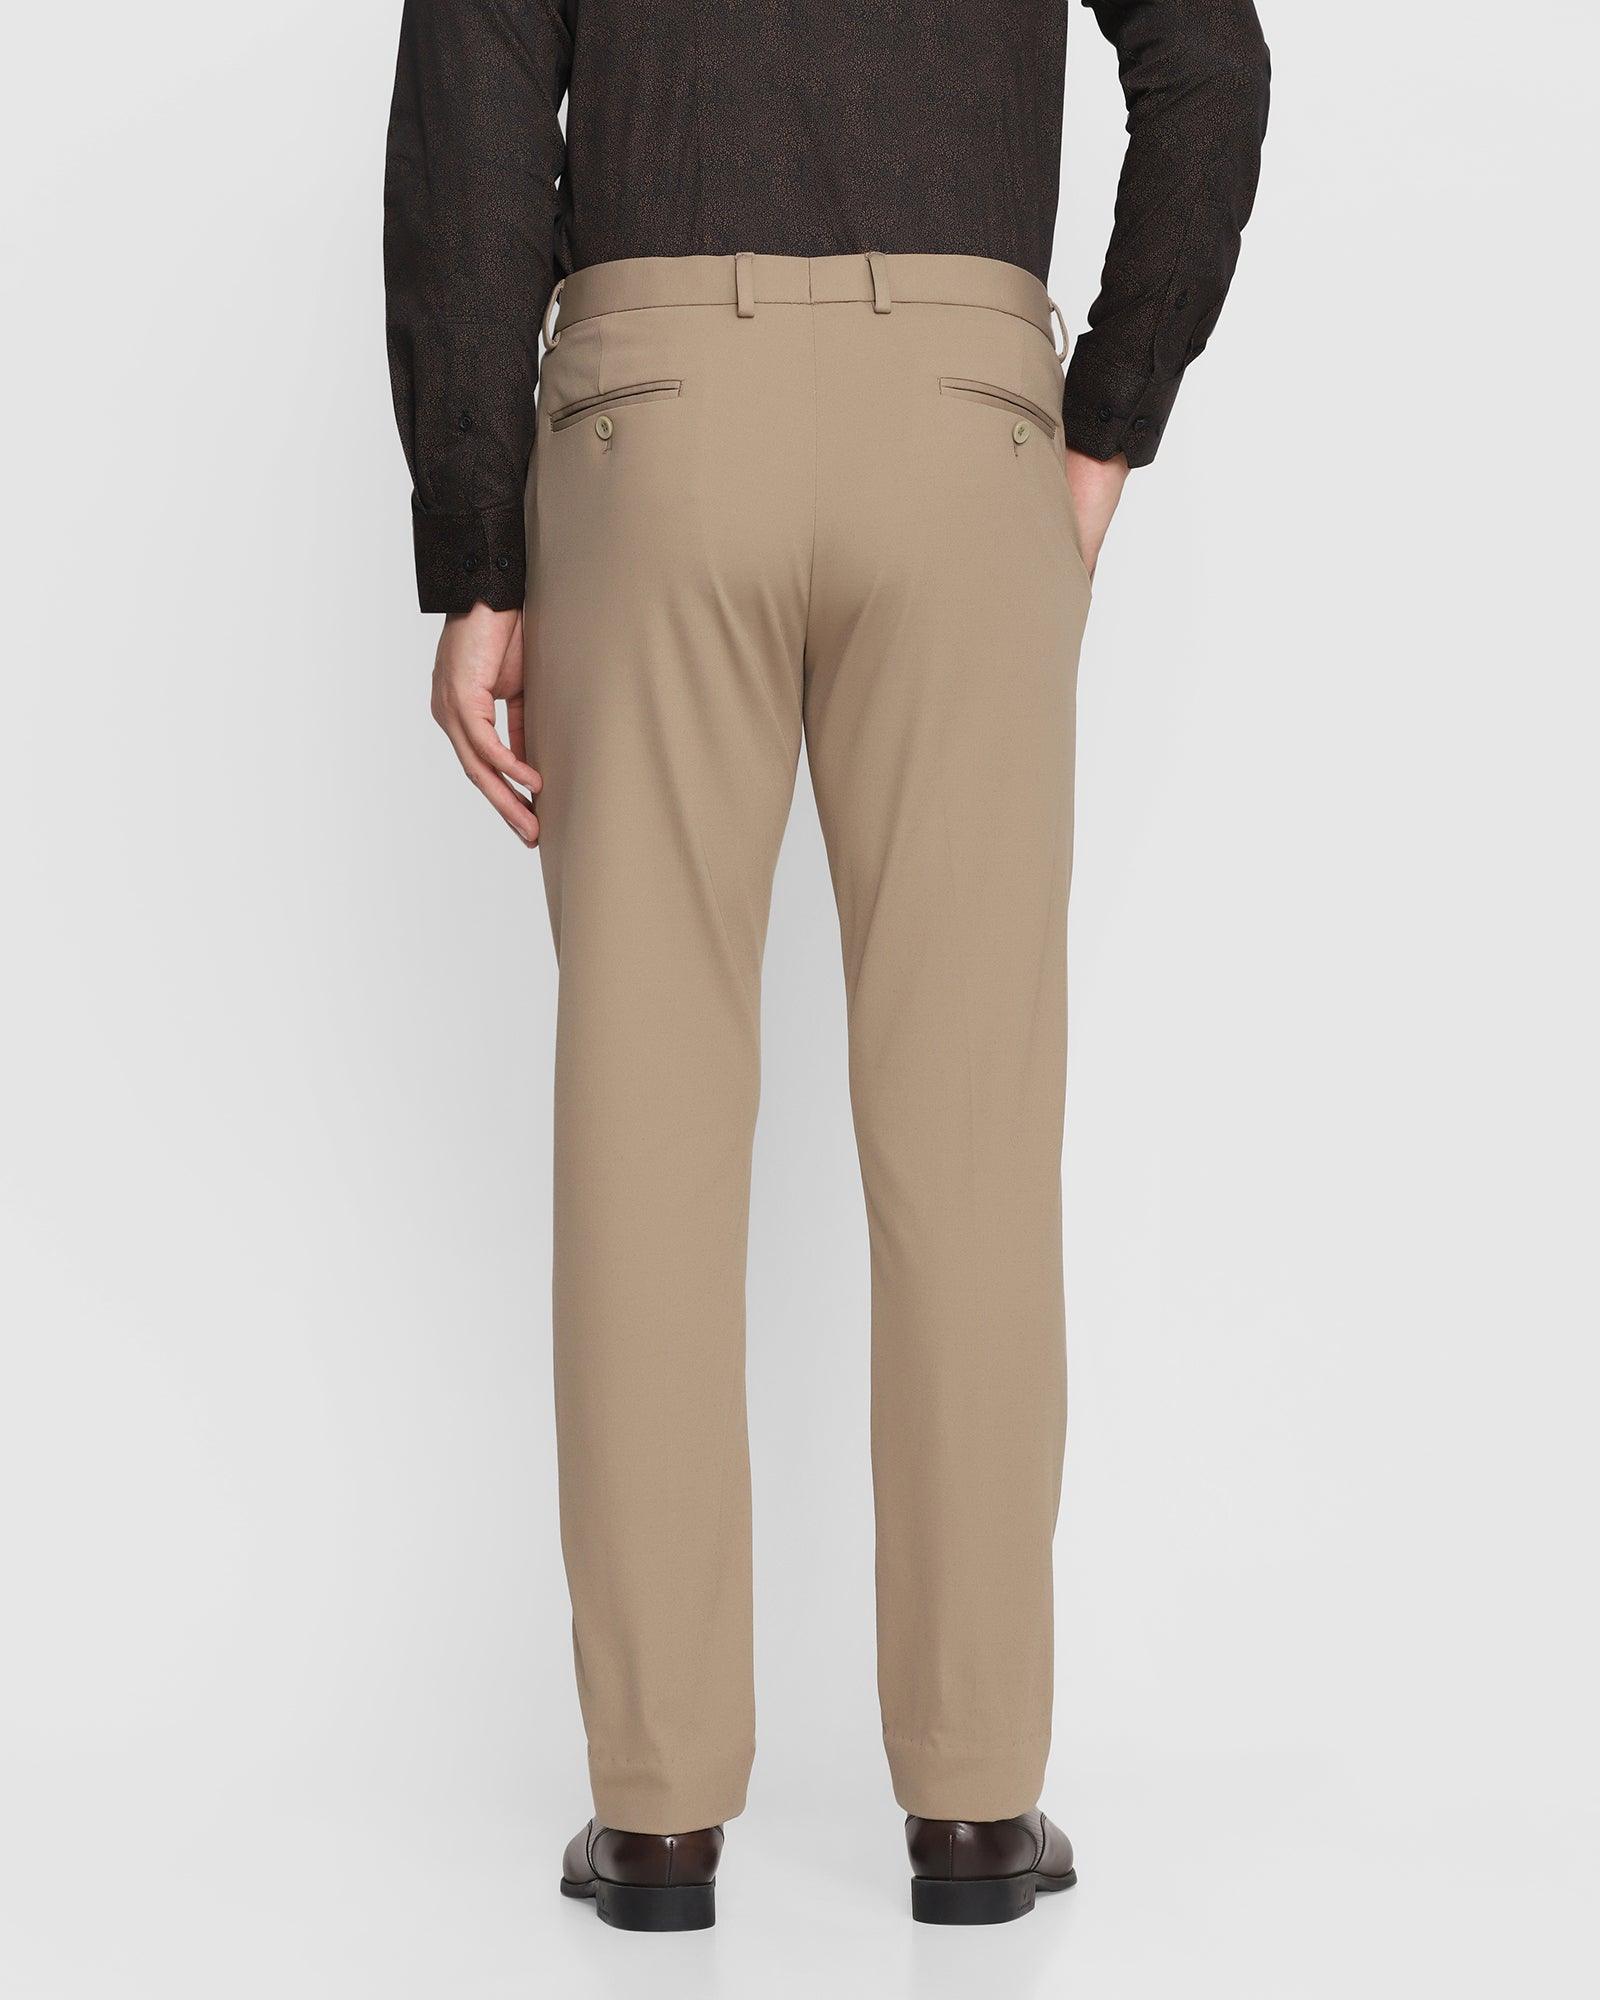 formal trousers in beige b 95 oak blackberrys clothing 2